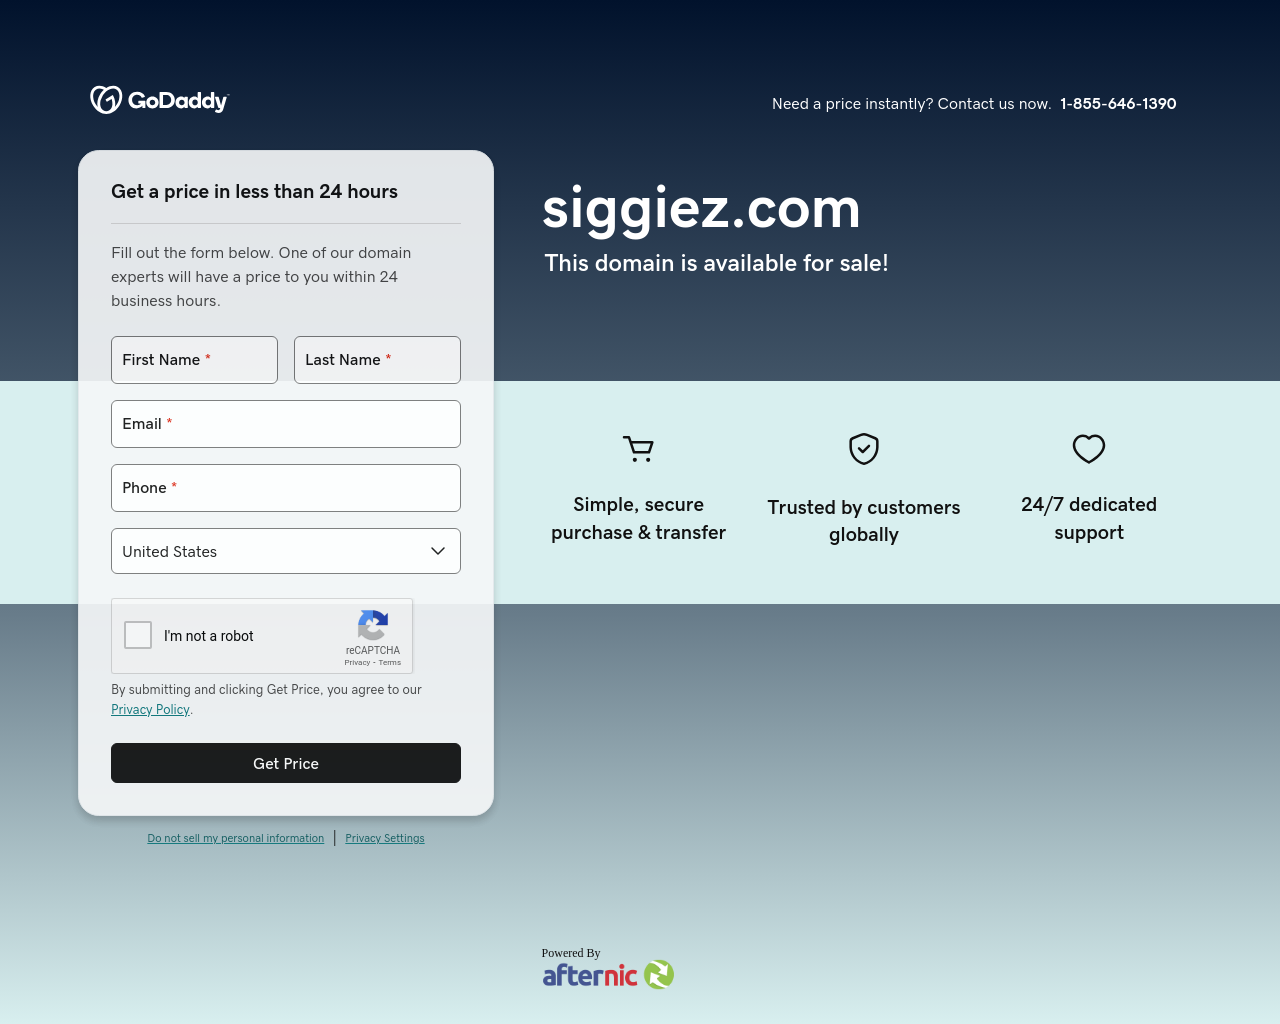 siggiez.com